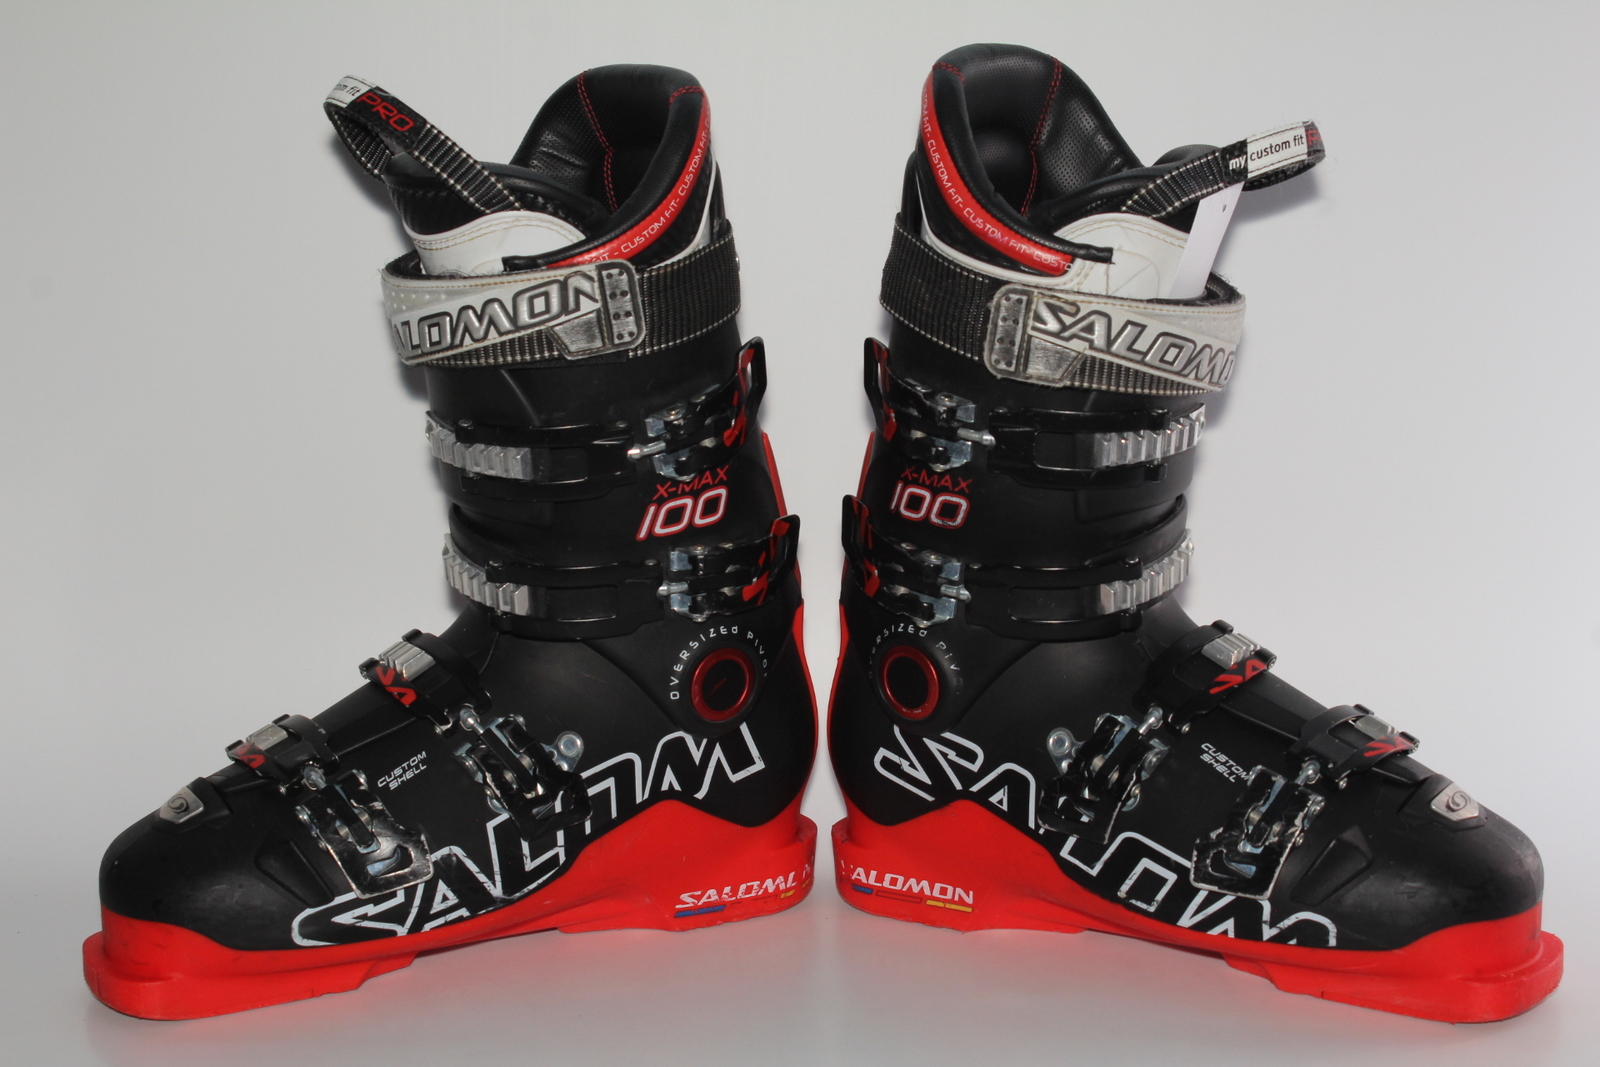 Lyžařské boty Salomon X-Max 100 vel. EU42.5 flexe 100